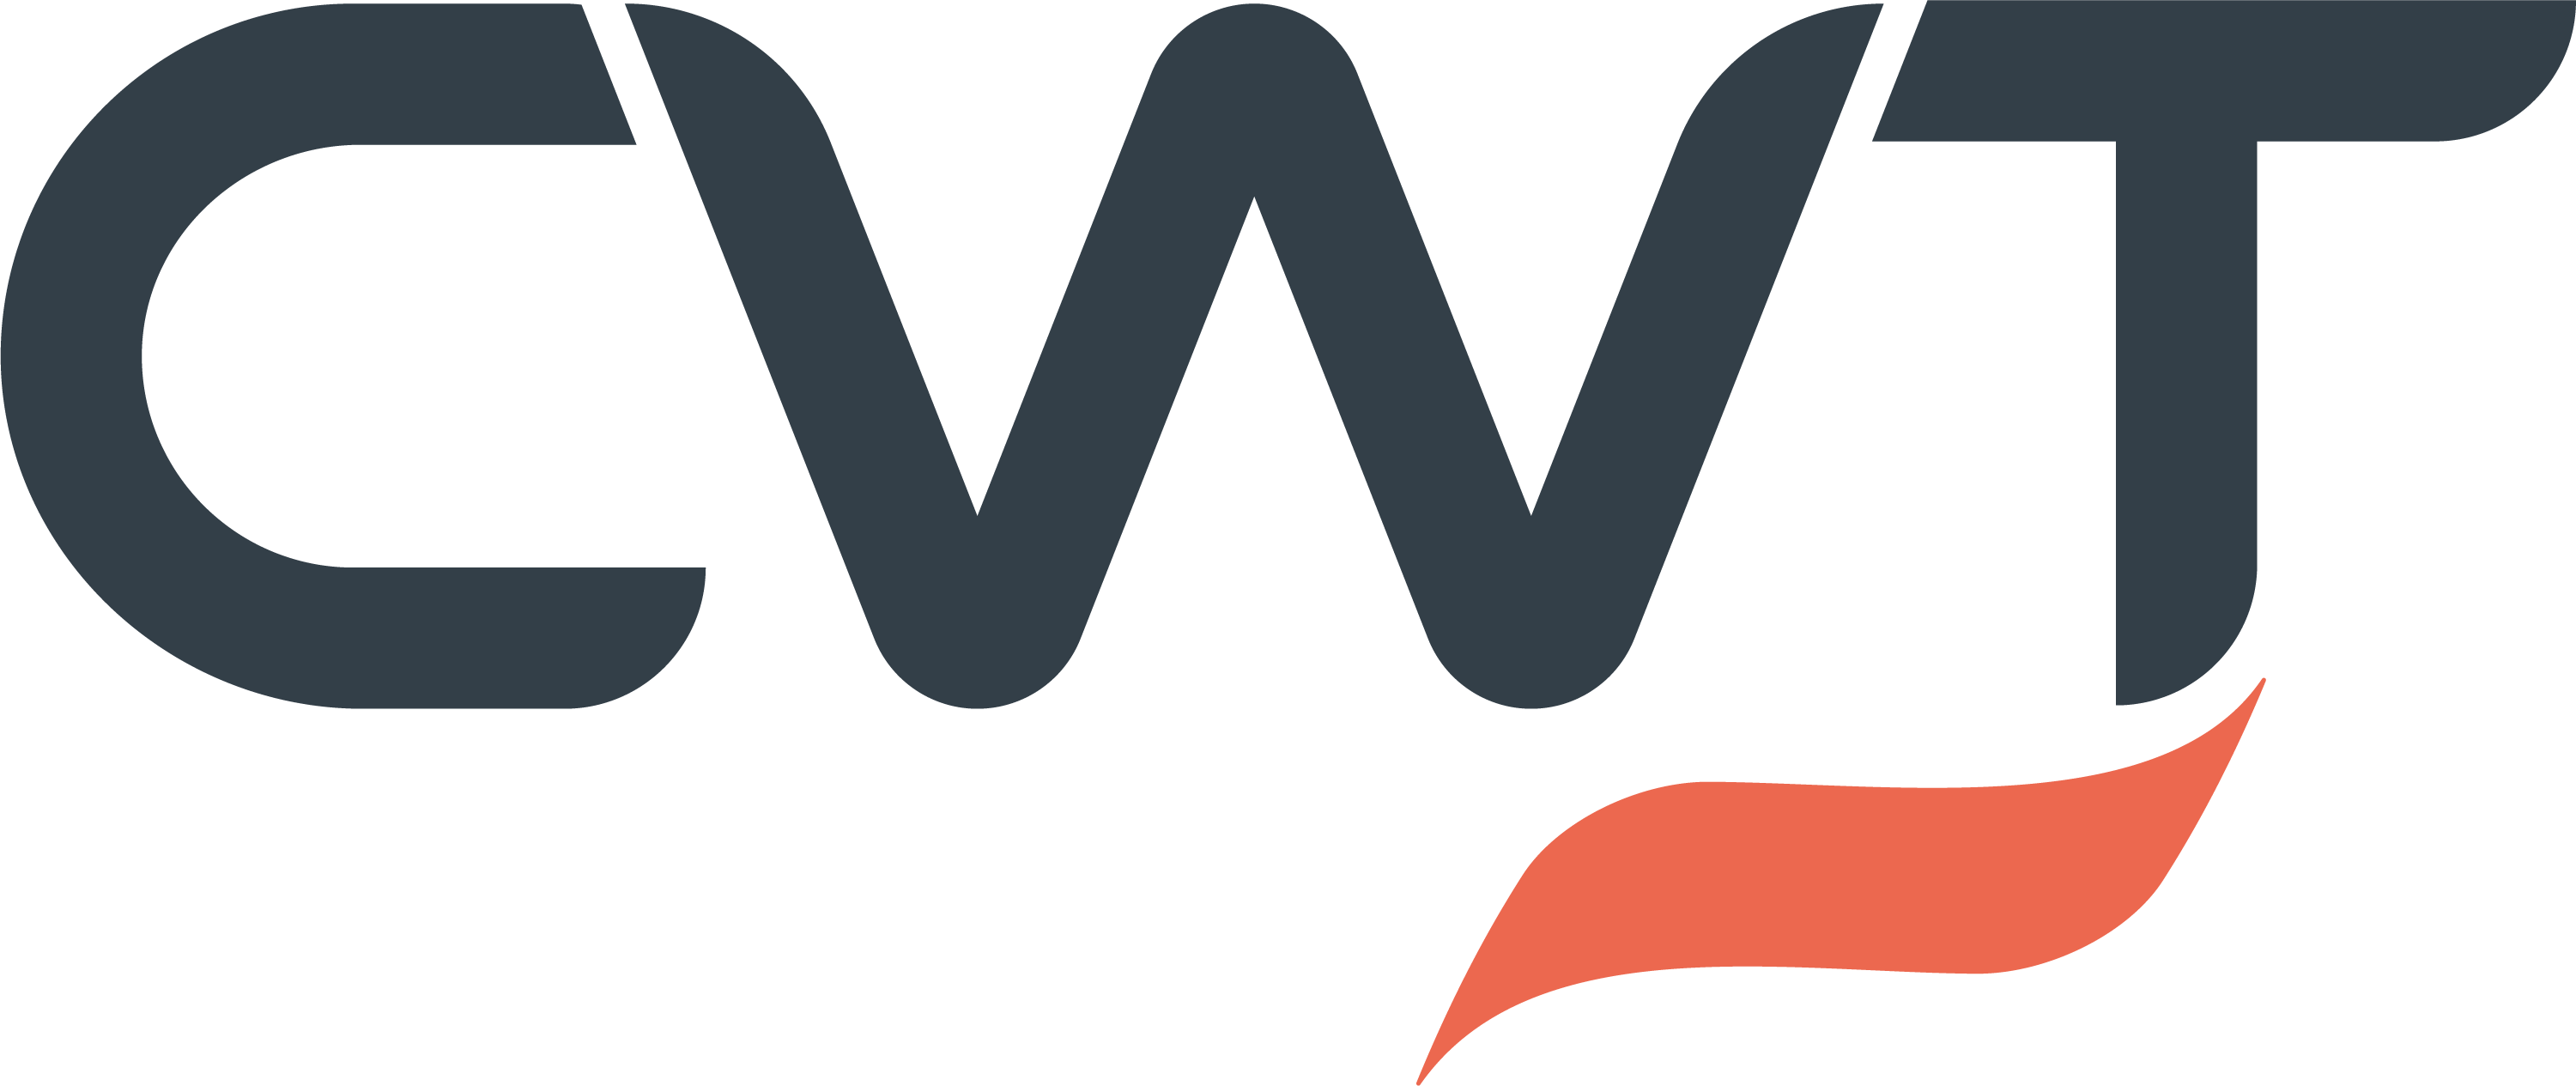 concur travel logo